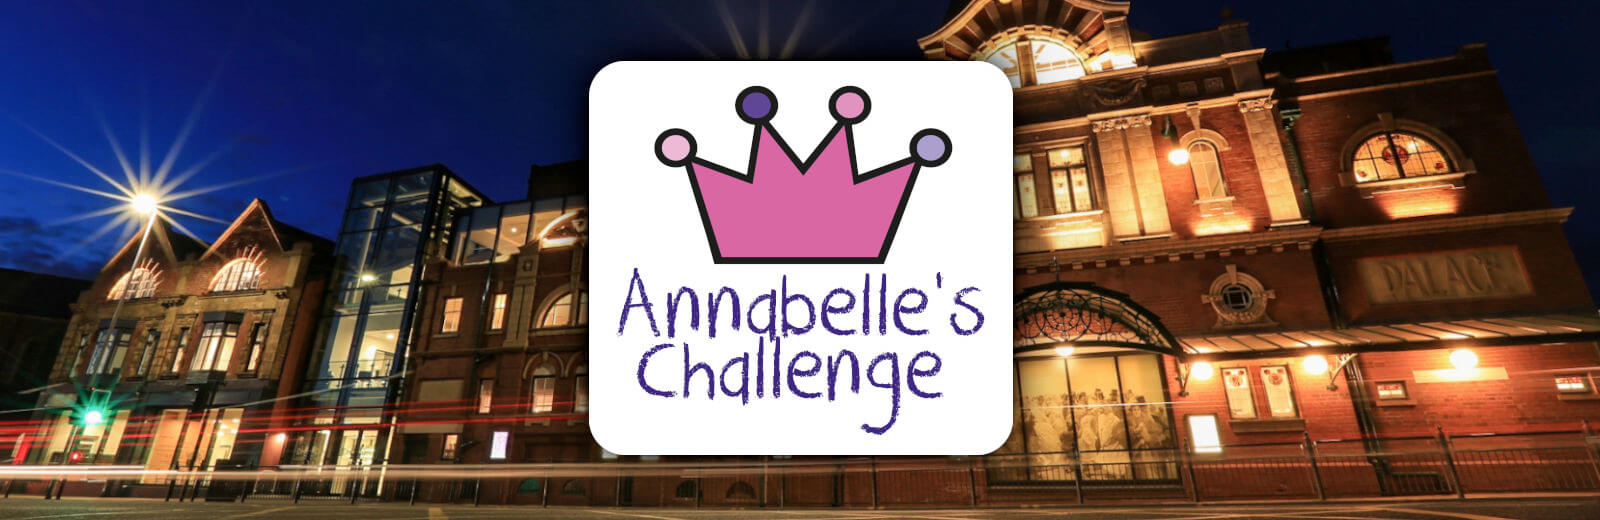 Annabelle’s Challenge